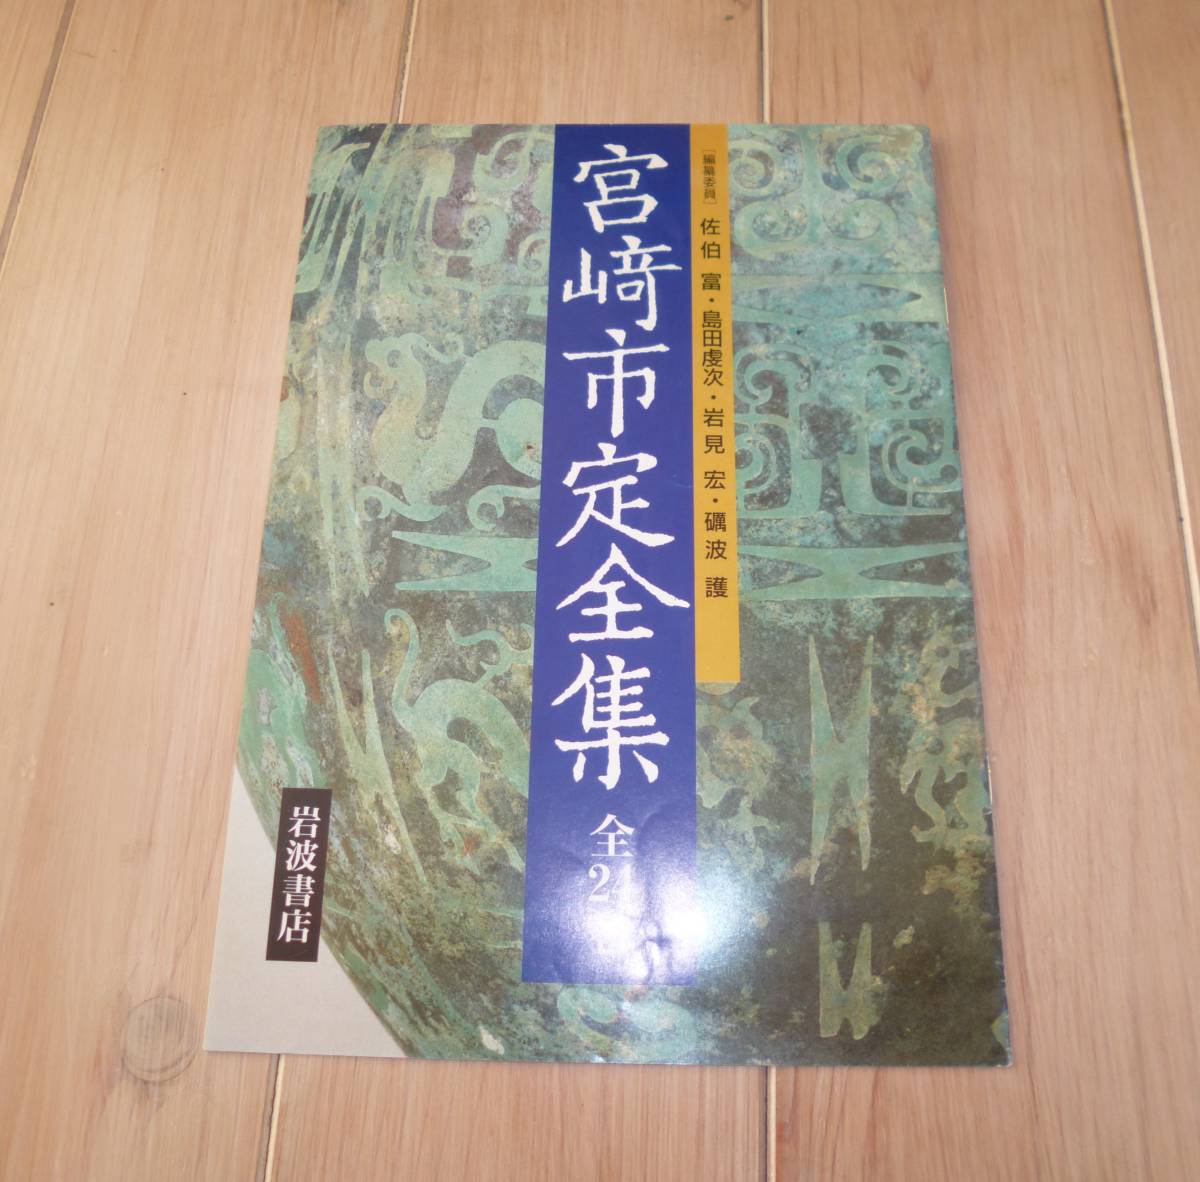 [ парафин бумага упаковка. это состояние. редкость. ][ содержание образец имеется ][ прекрасный товар ] Miyazaki город . полное собрание сочинений все 25 шт. .